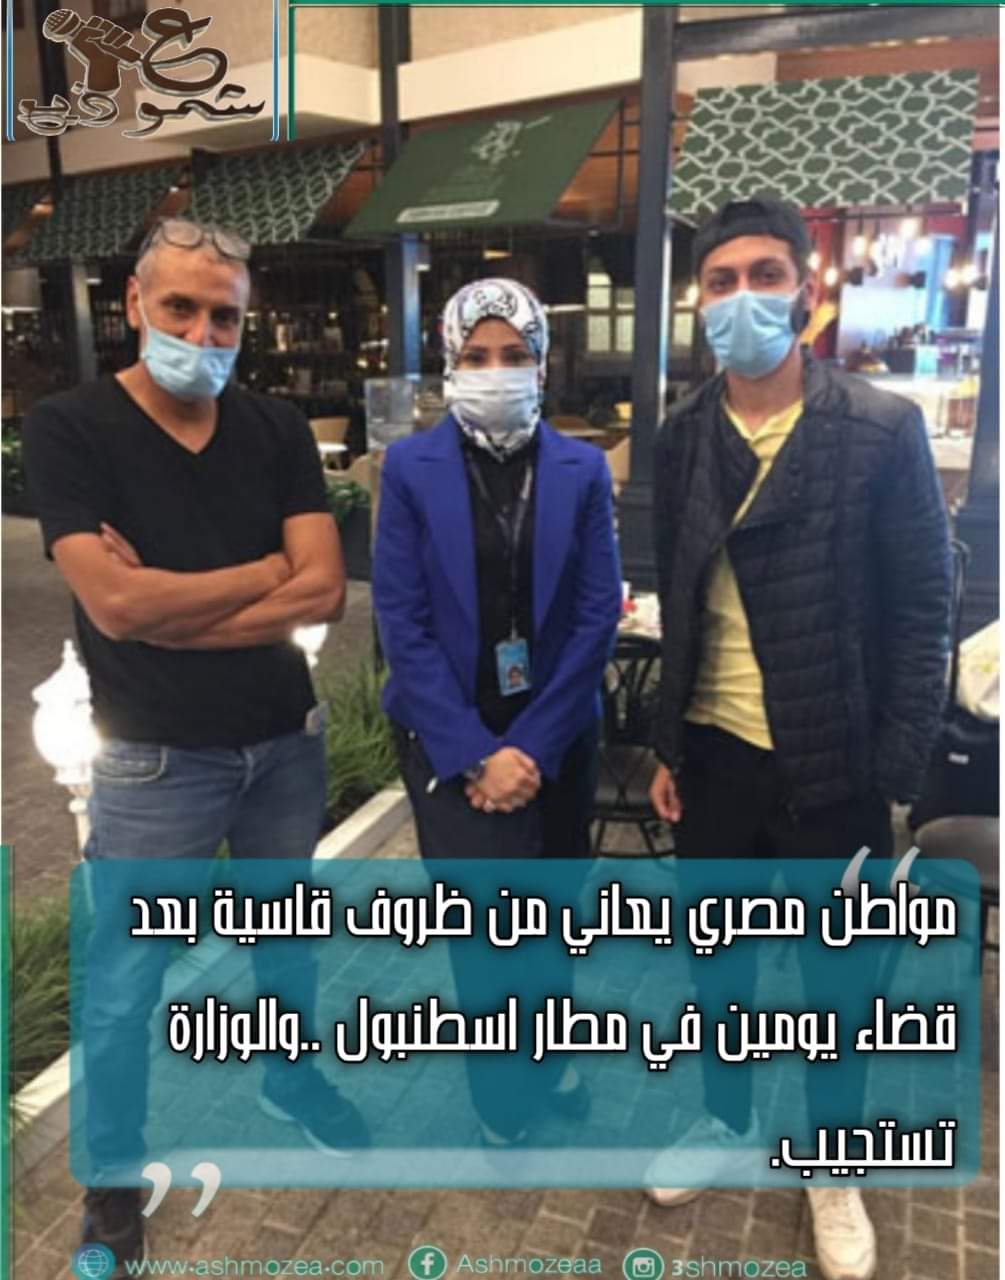 مواطن مصري يعاني من ظروف قاسية بعد قضاء يومين في مطار اسطنبول .. والوزارة تستجيب.